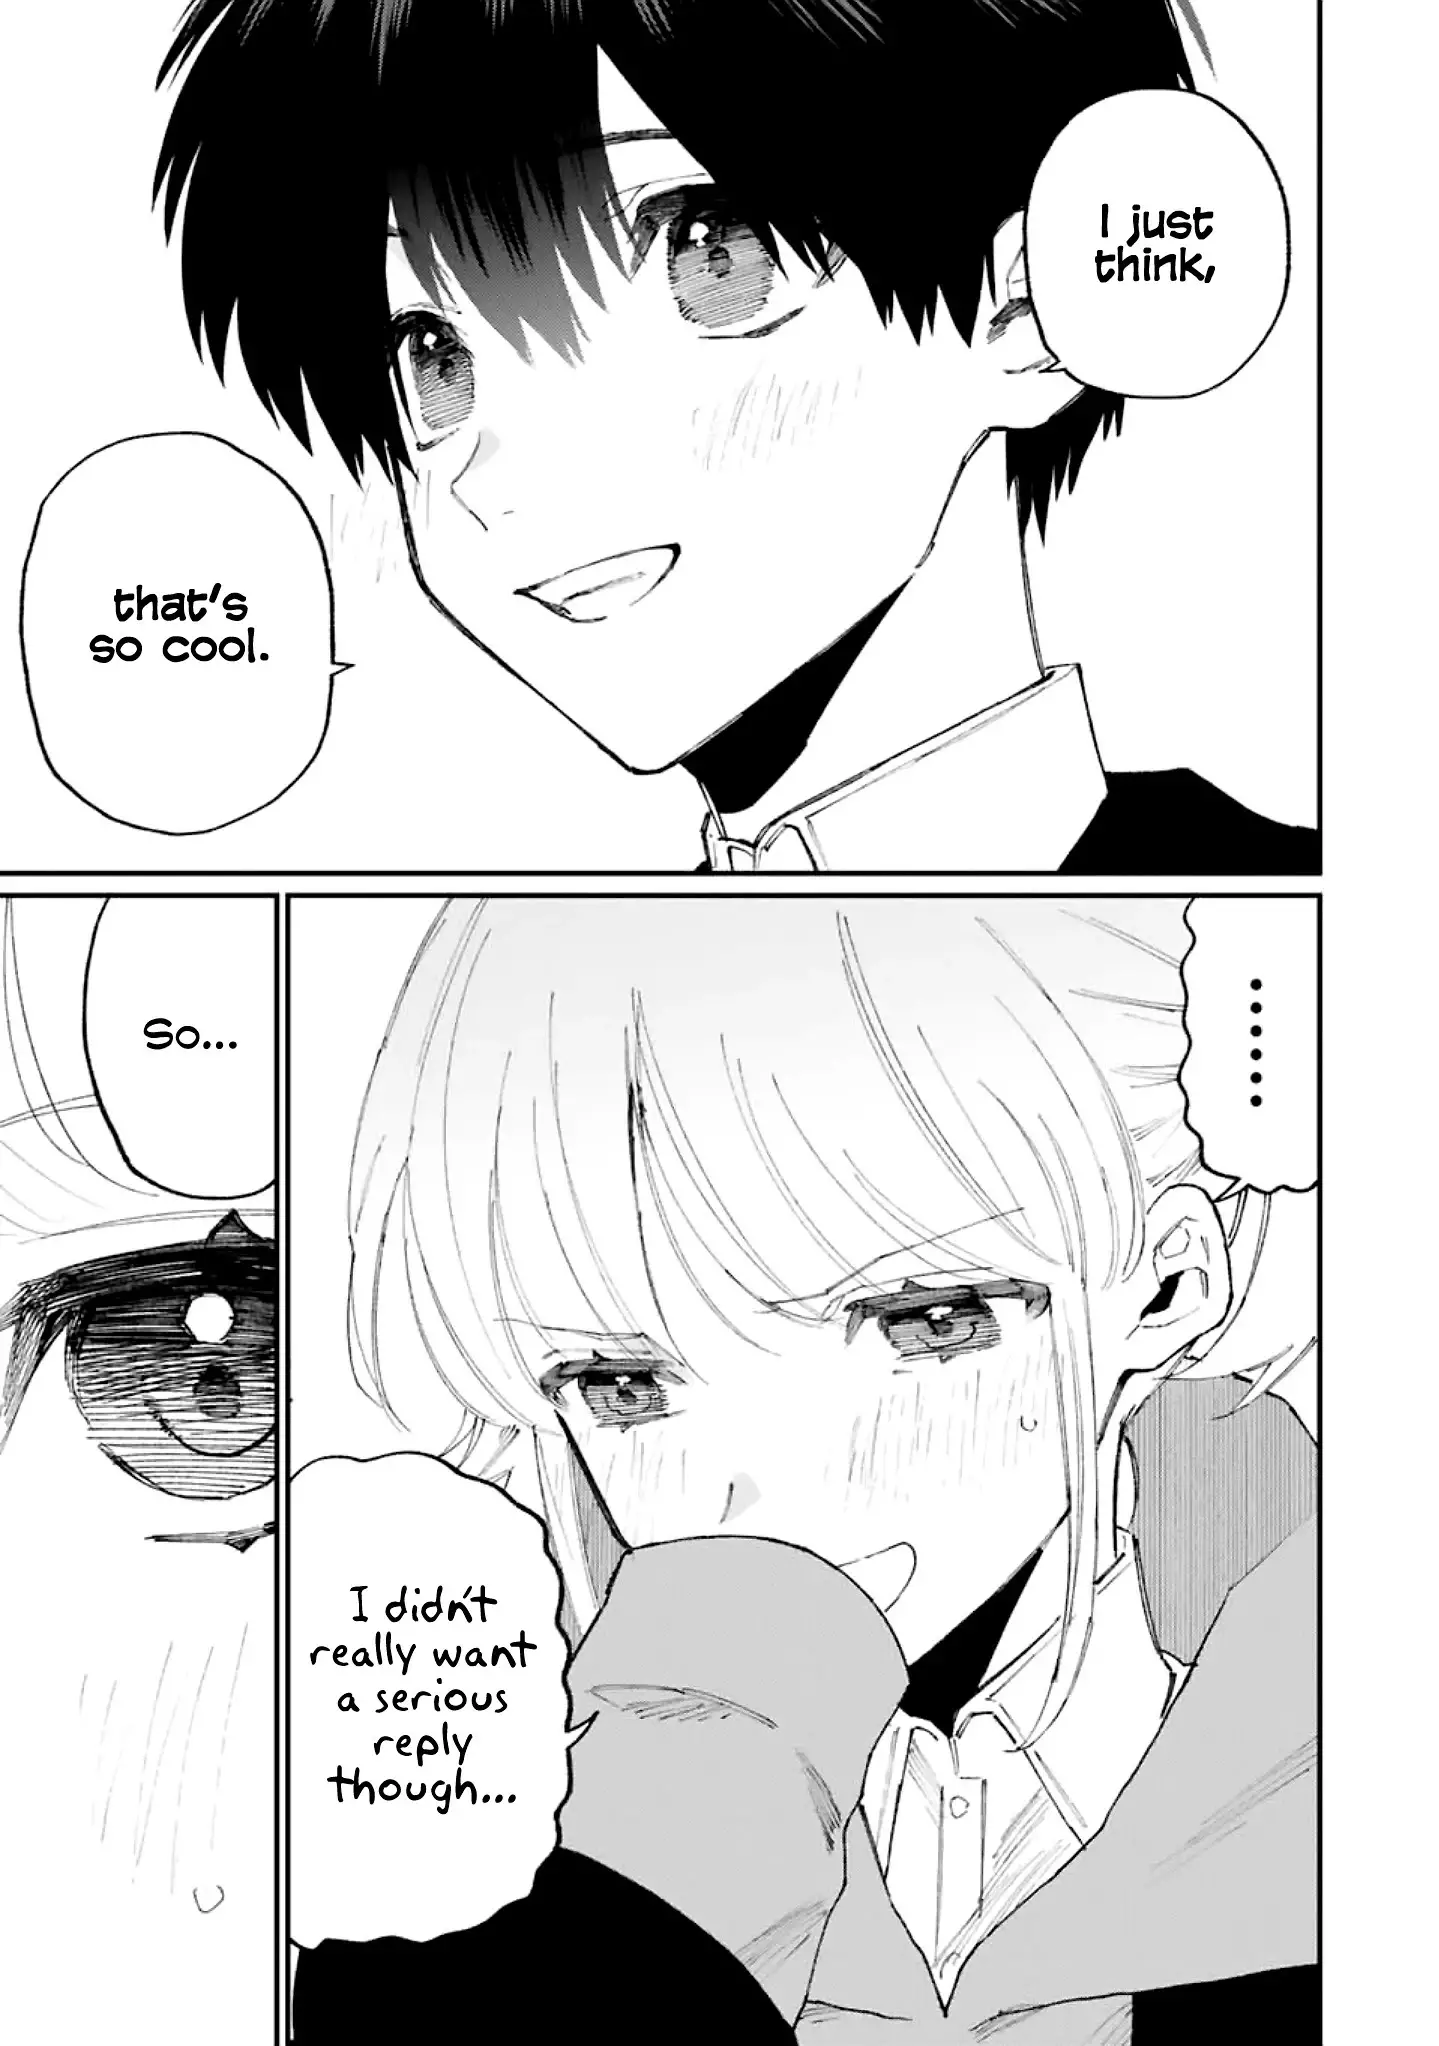 Shikimori's Not Just A Cutie - 131 page 12